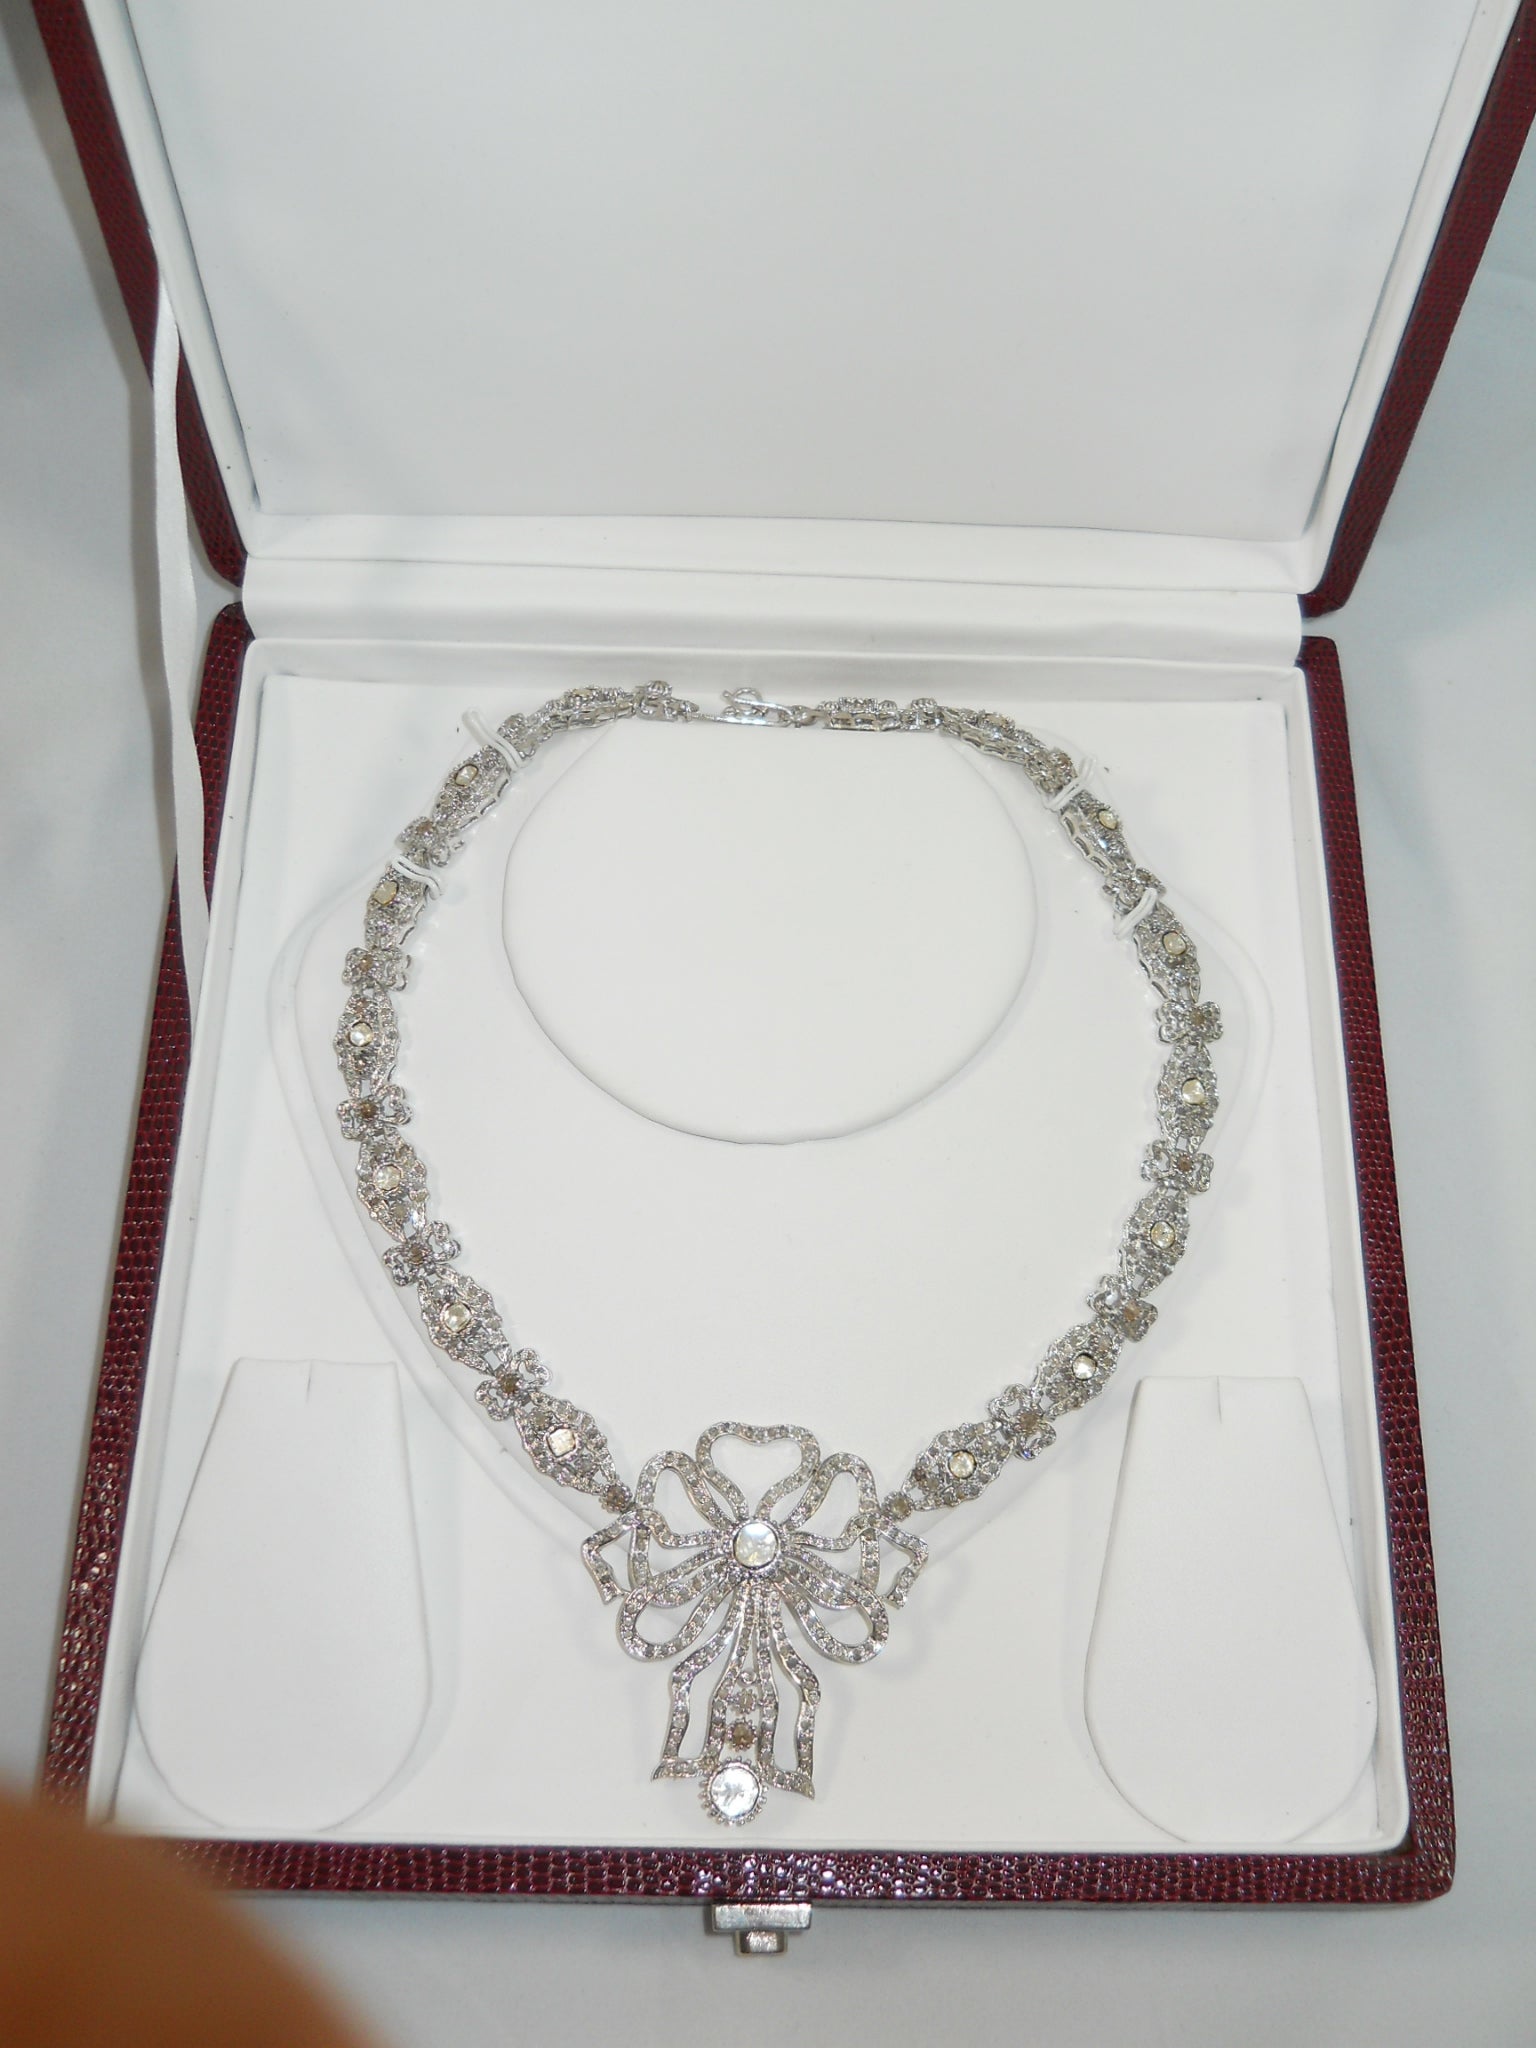 Ce magnifique collier en argent orné d'un ruban et d'un diamant rose non taillé est unique en son genre. Il a été créé par de fins artisans à l'aide de diamants naturels non taillés et de diamants taillés en rose. Les diamants ont été sertis de